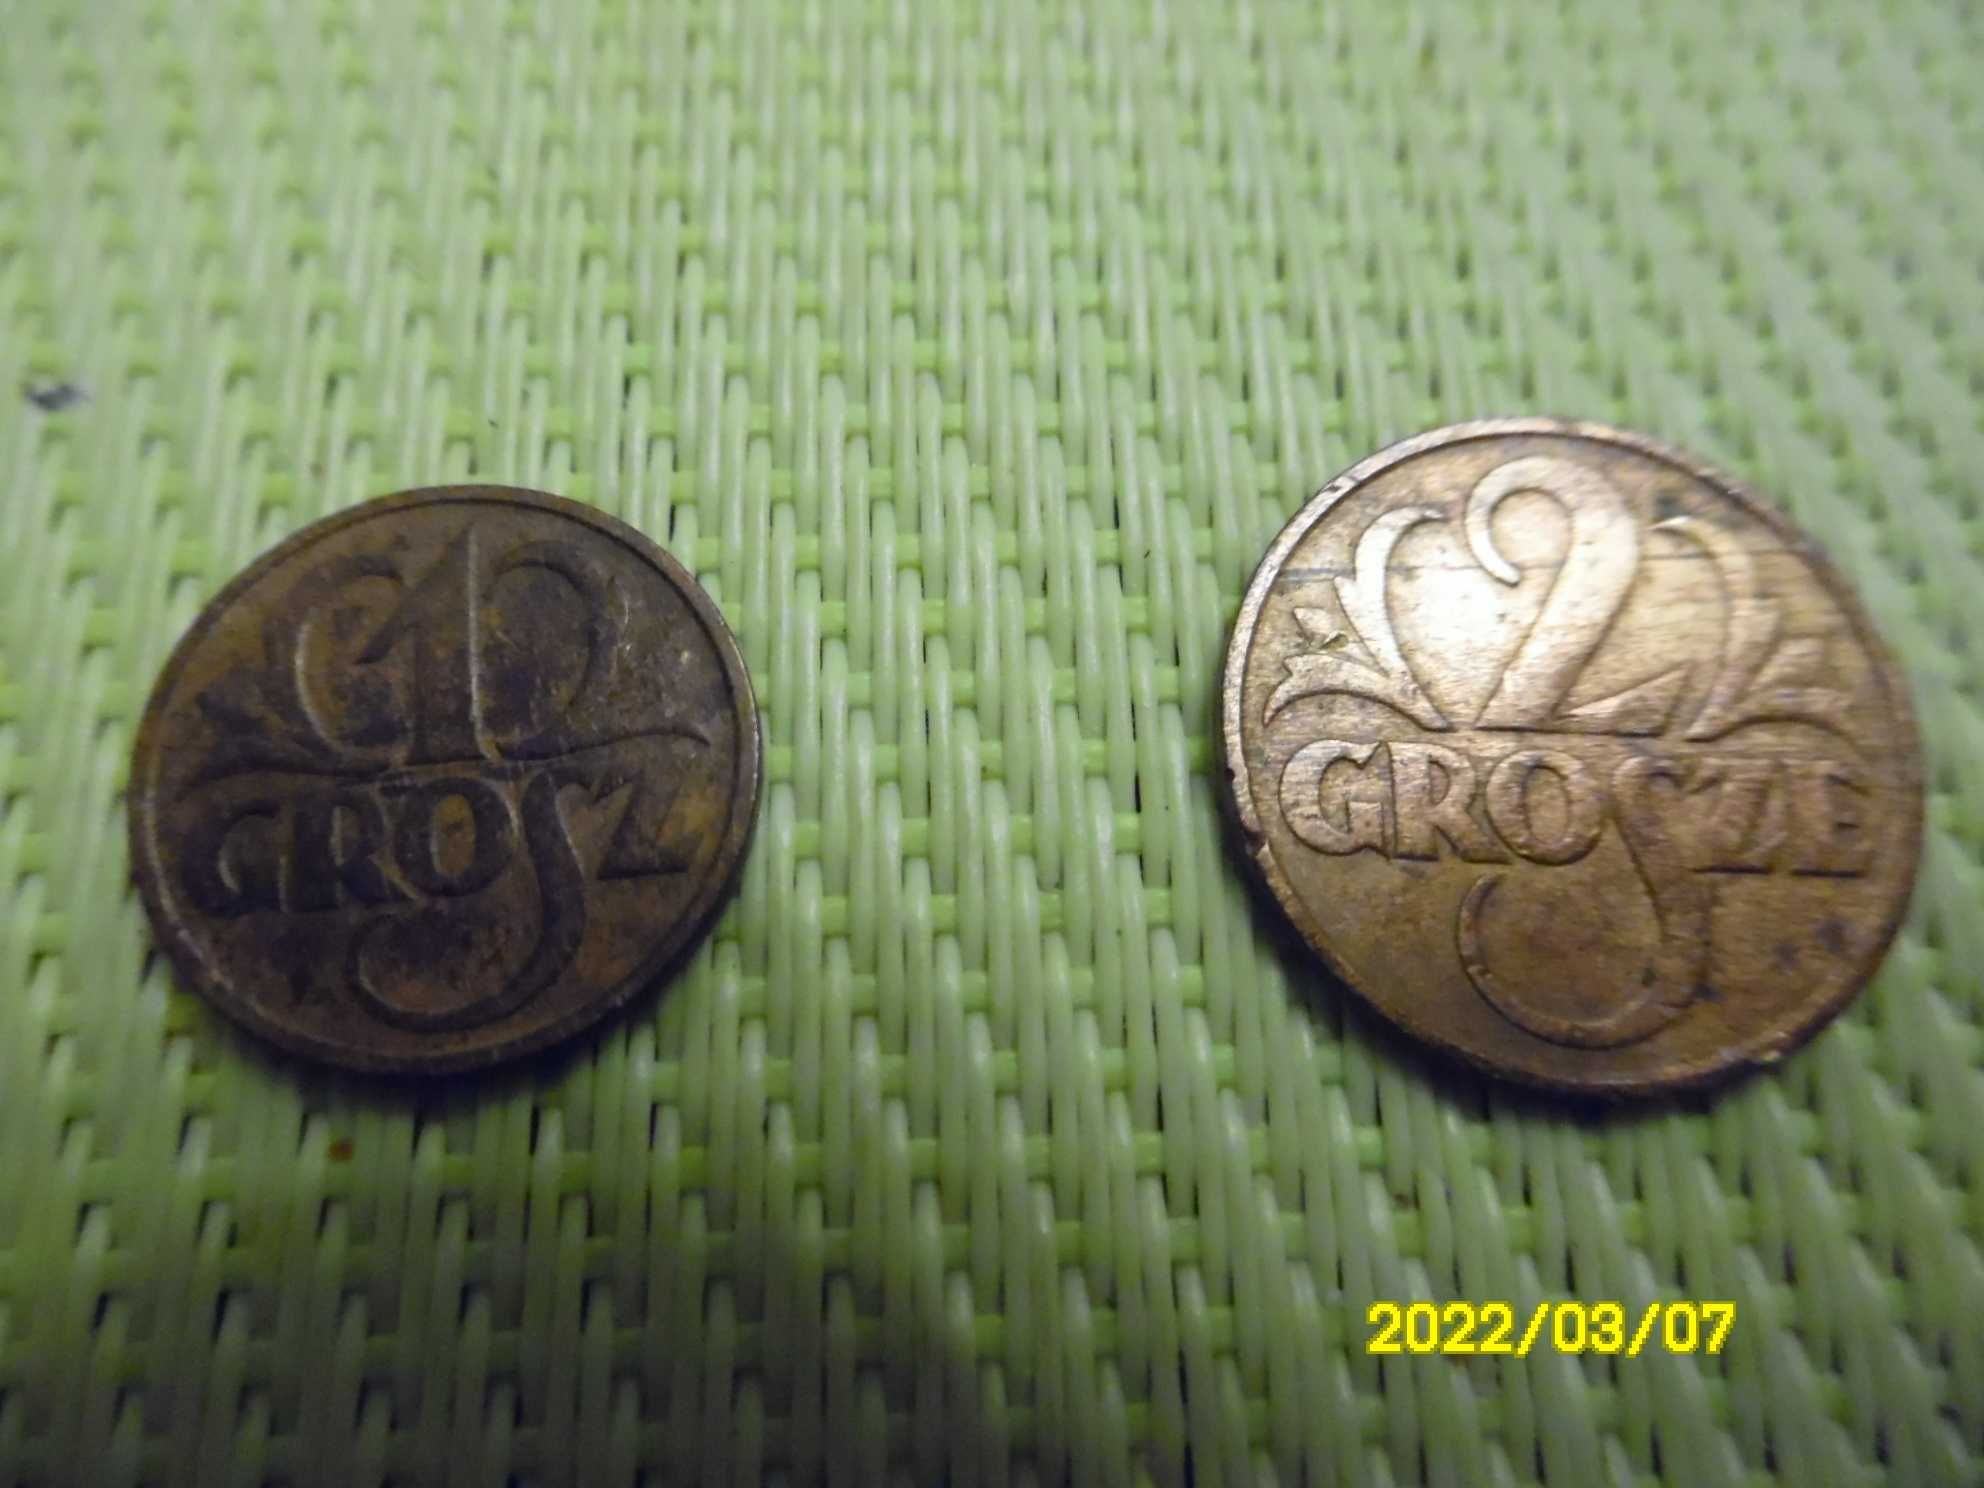 Sprzedam zestaw obiegowych monet z okresu II RP